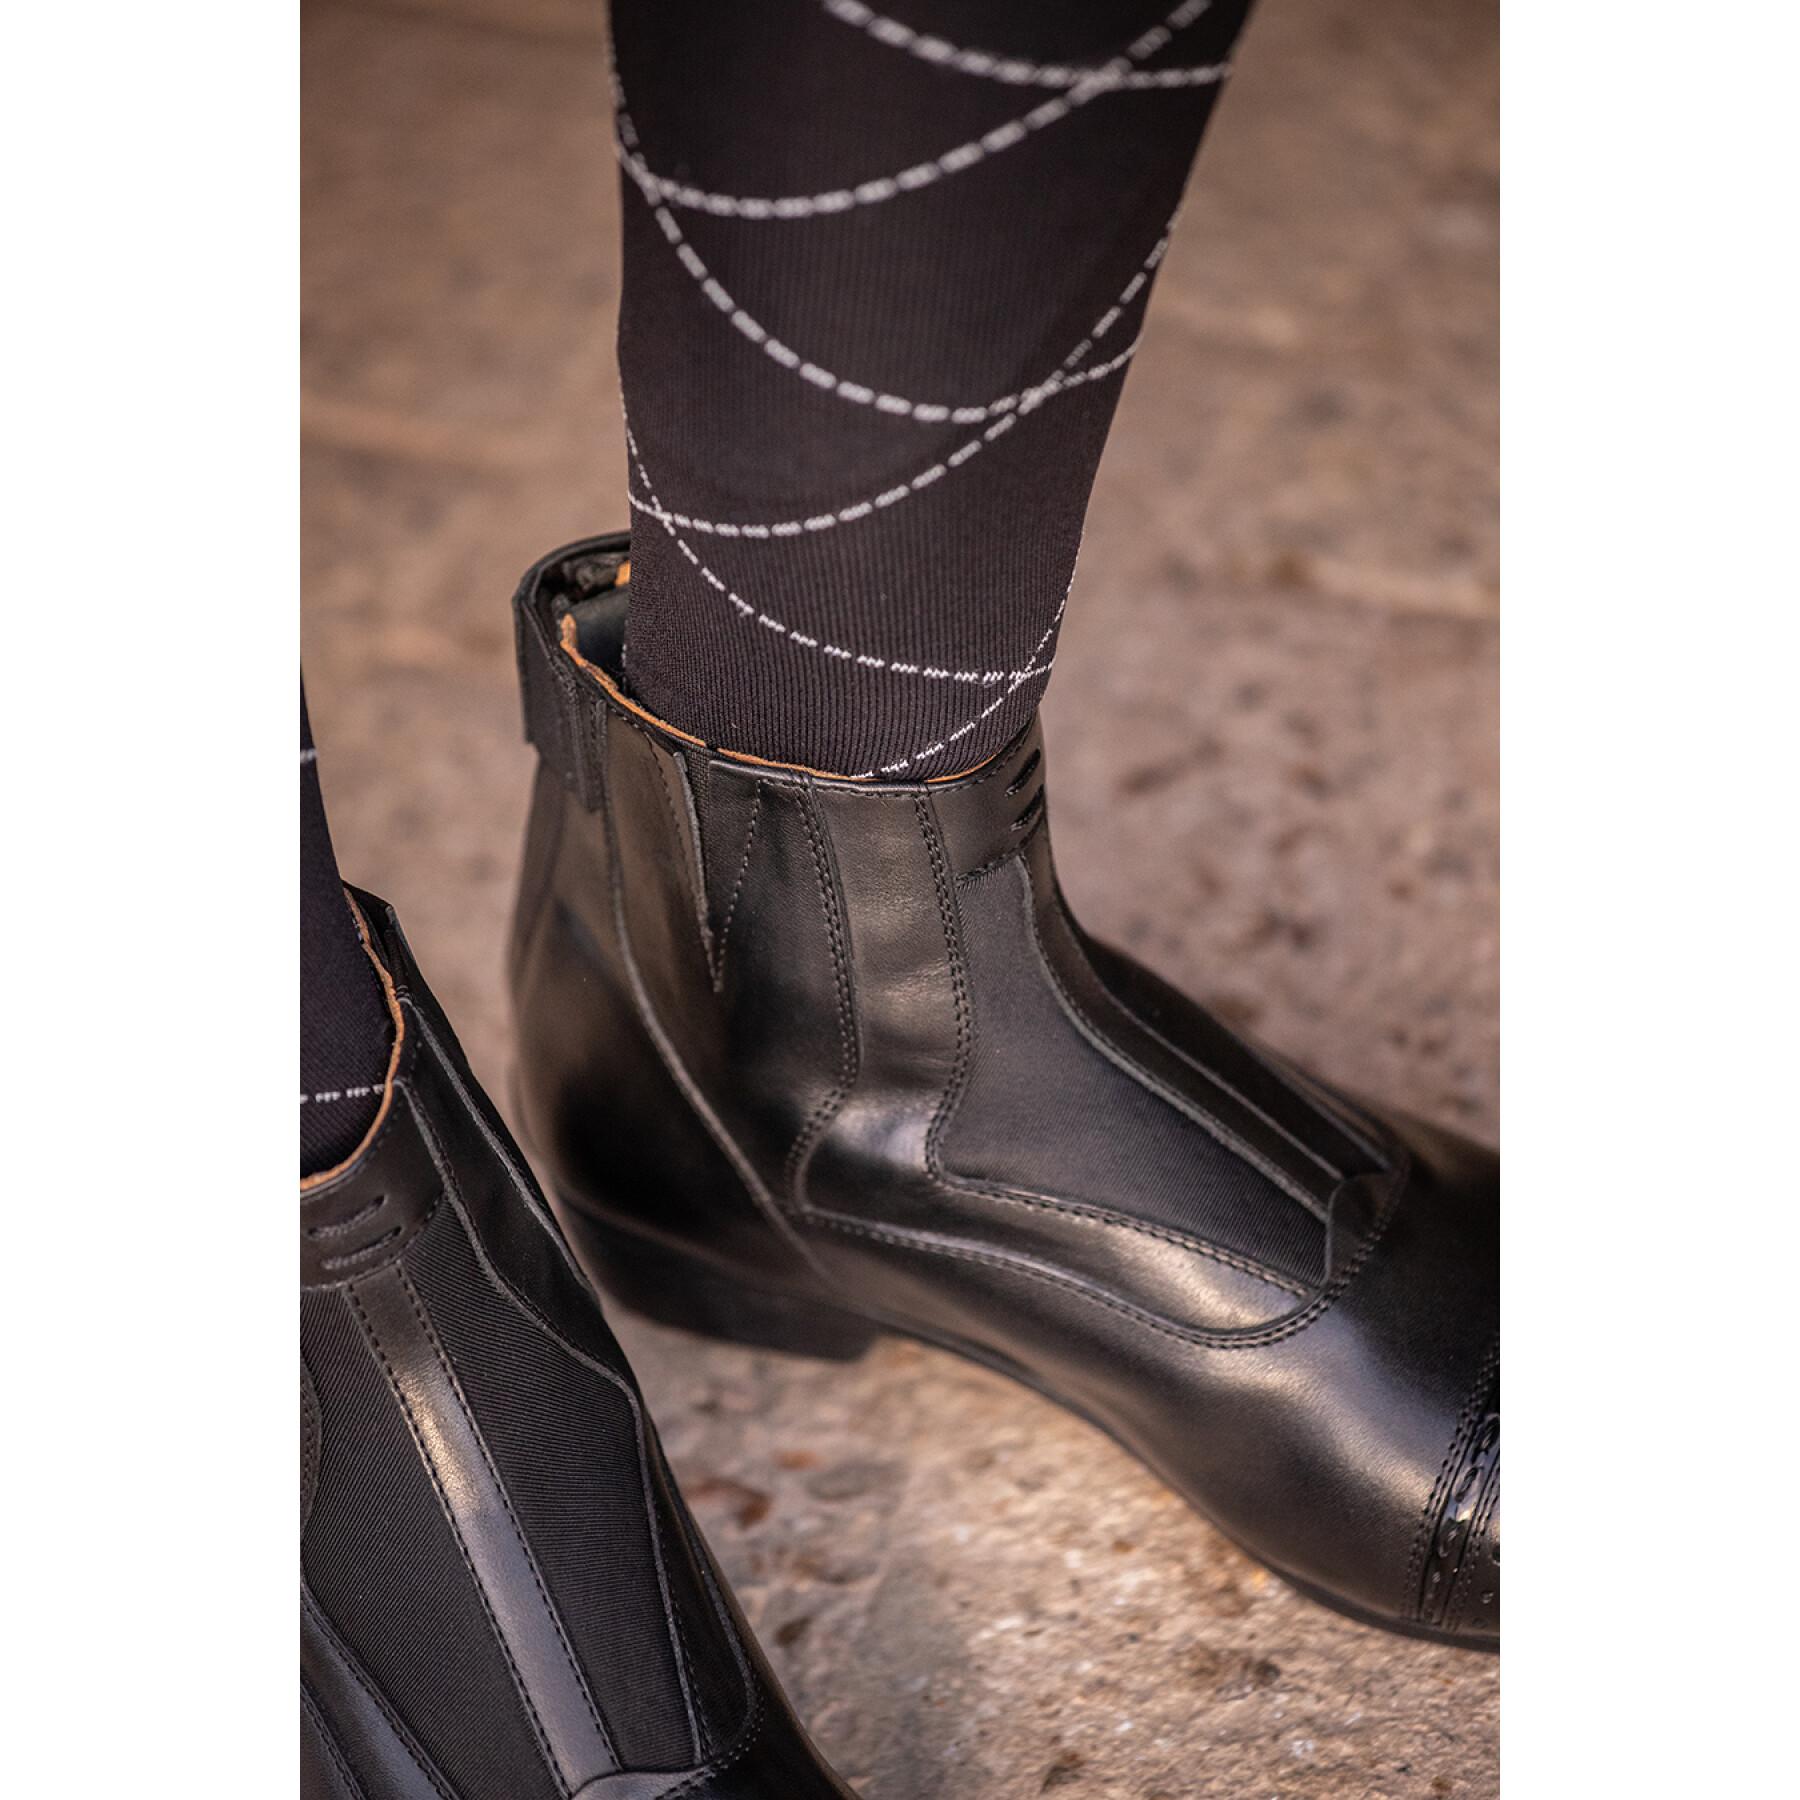 Women's riding boots Penelope Céleste